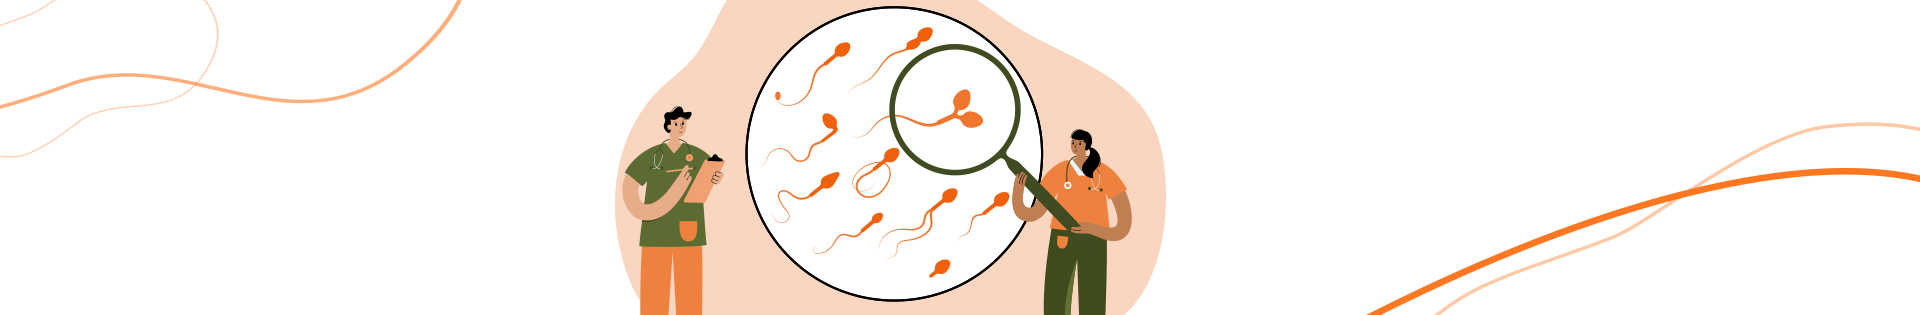 Espermograma na reprodução assistida: qual a função do exame?